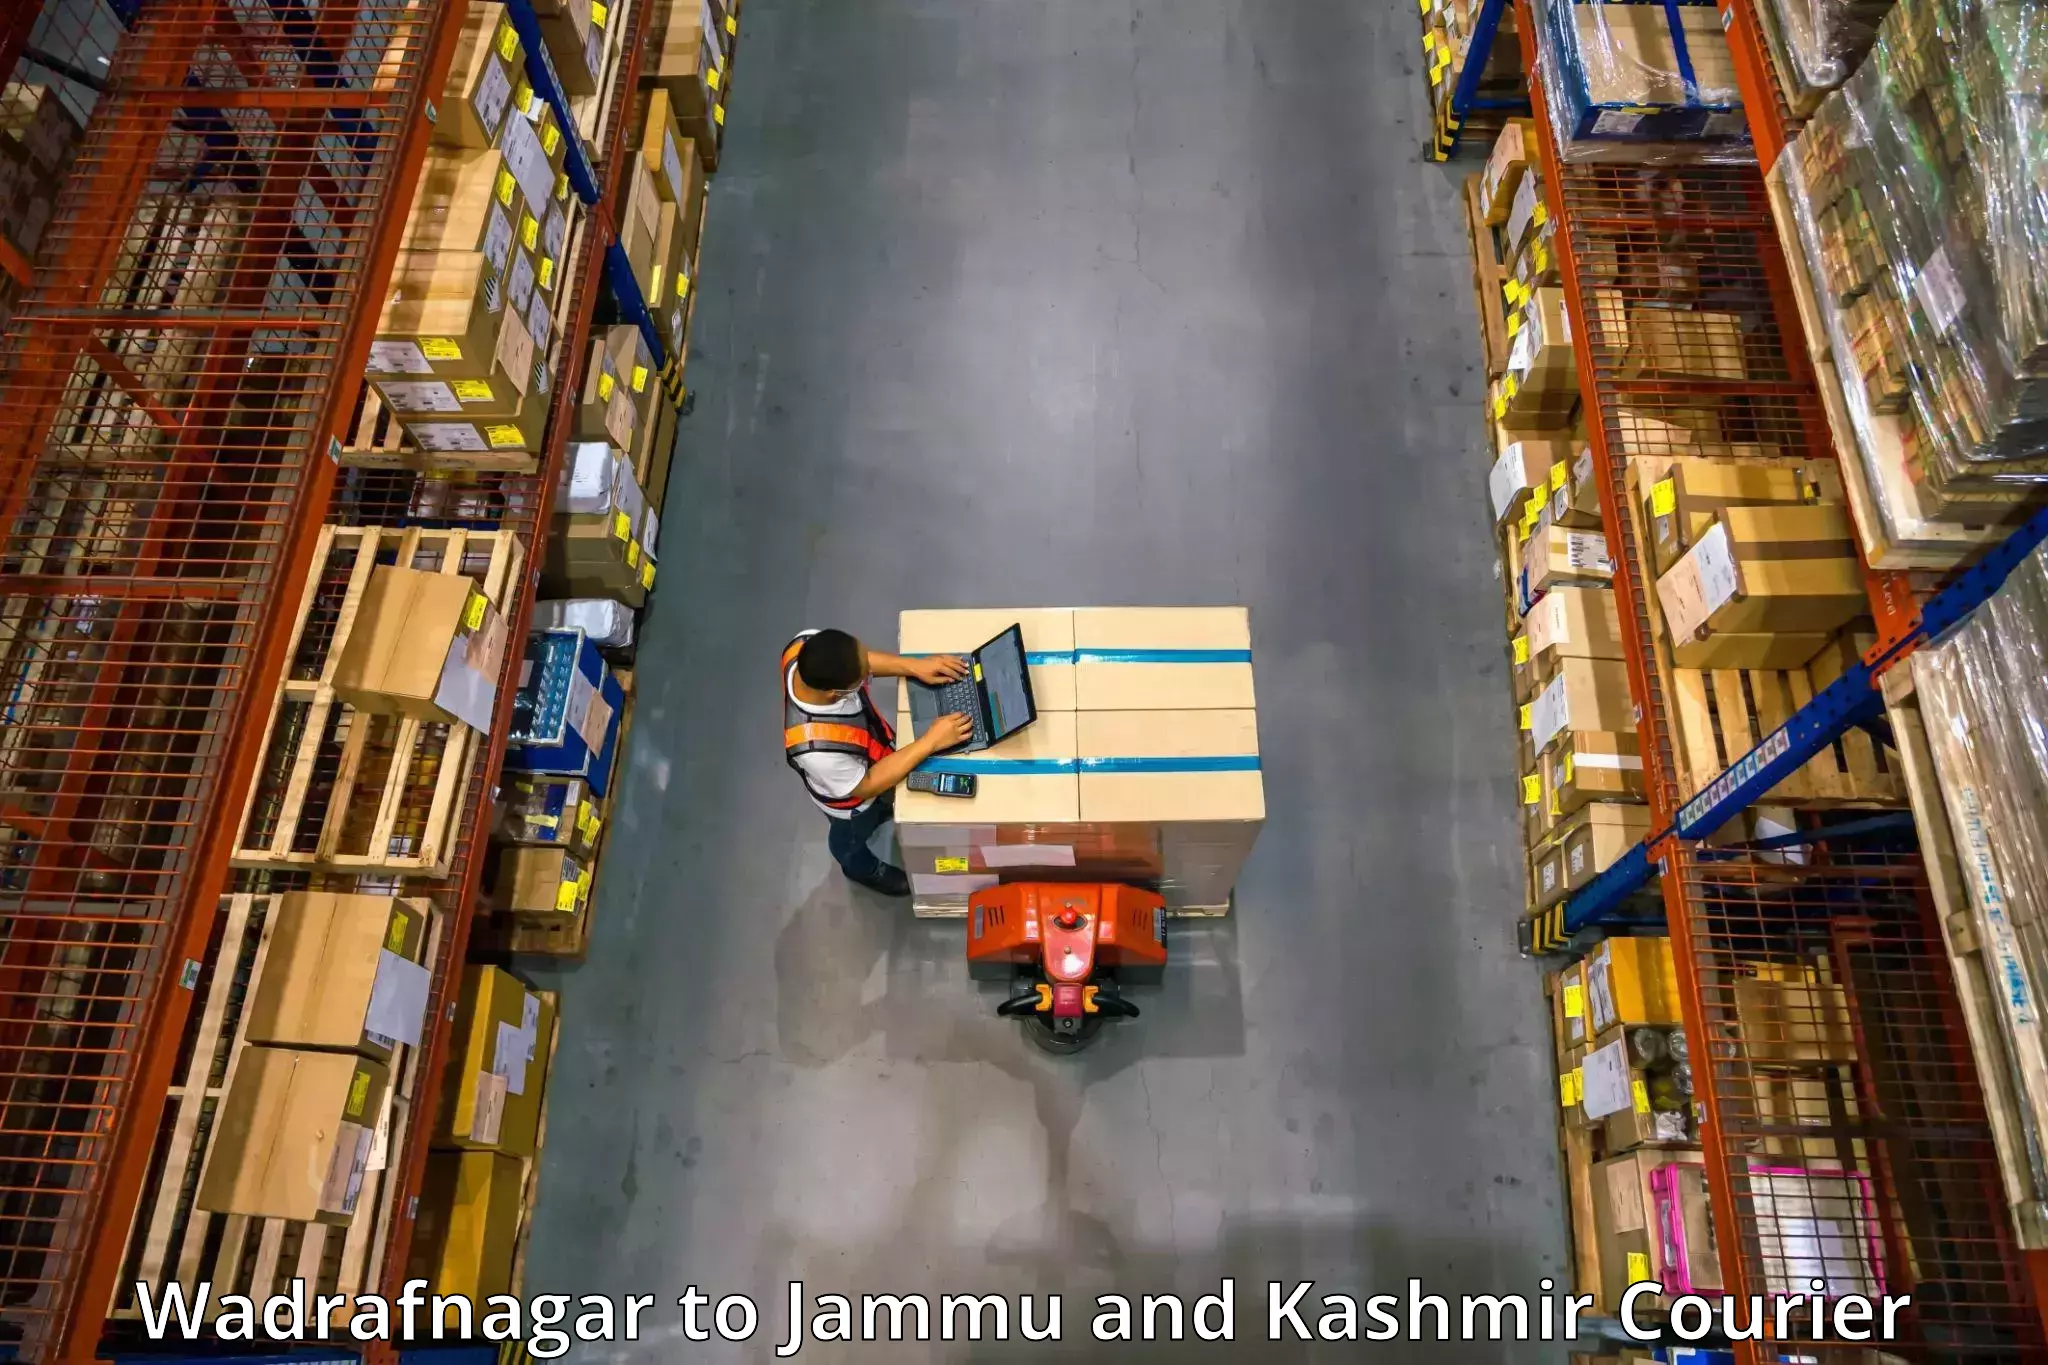 Furniture transport experts Wadrafnagar to Jakh